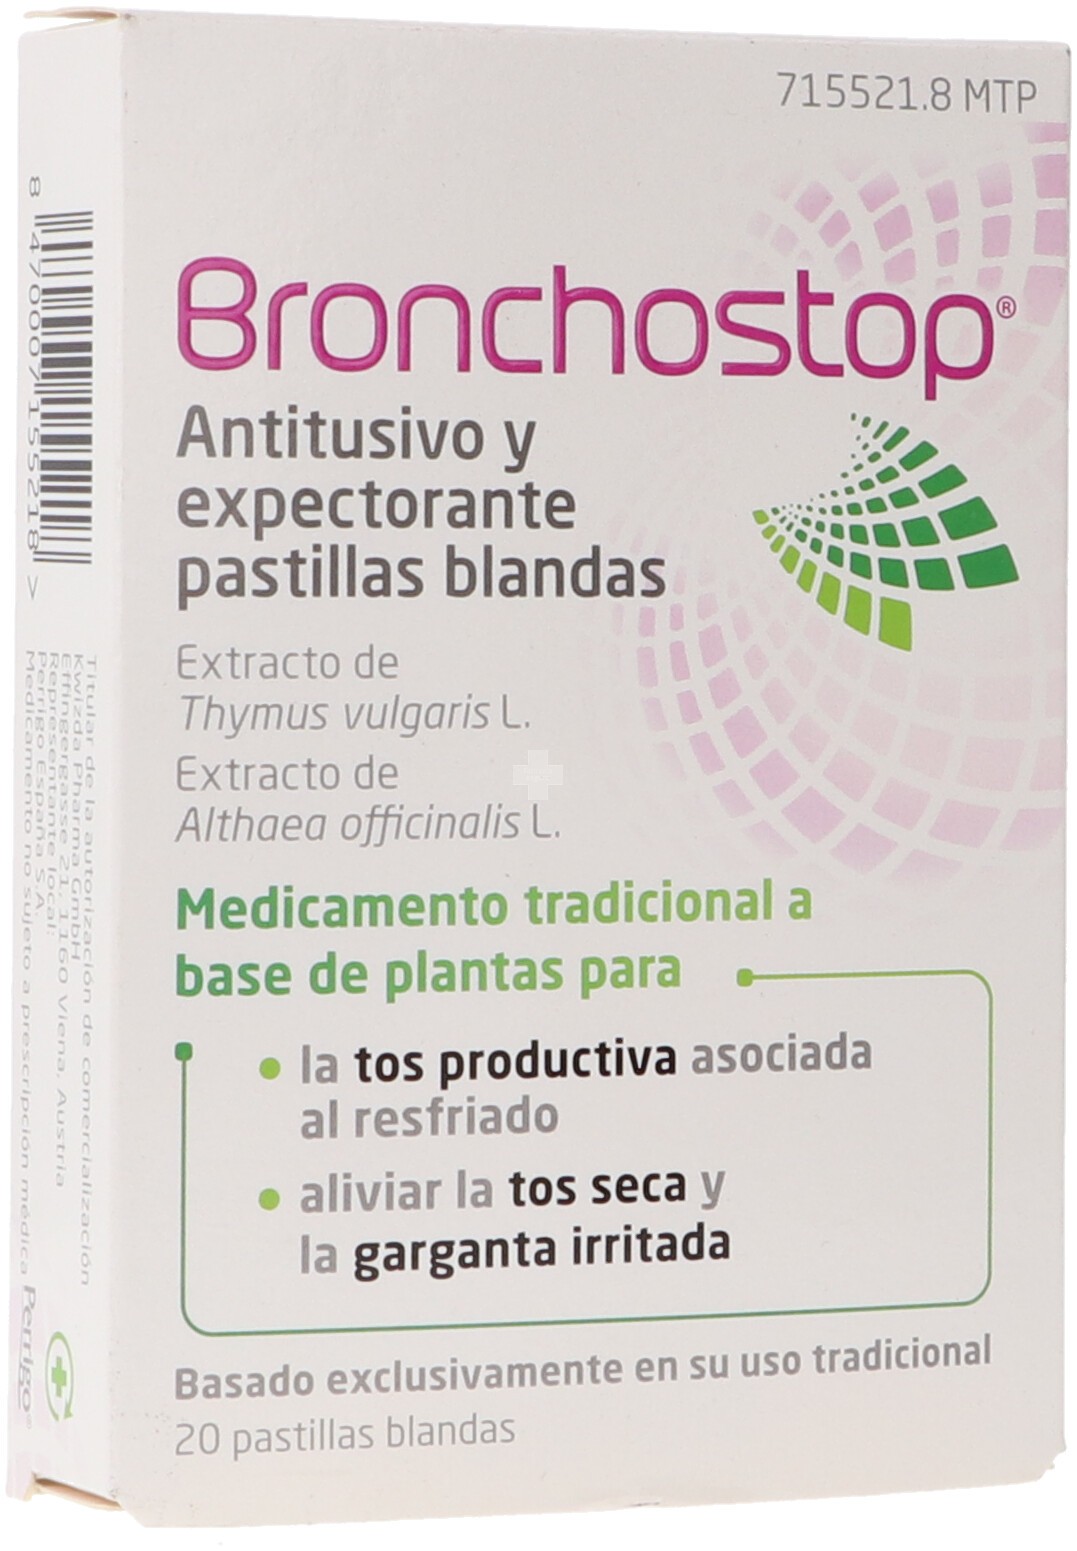 Bronchostop Antitusivo Y Expectorante Pastillas Blandas - 20 Pastillas